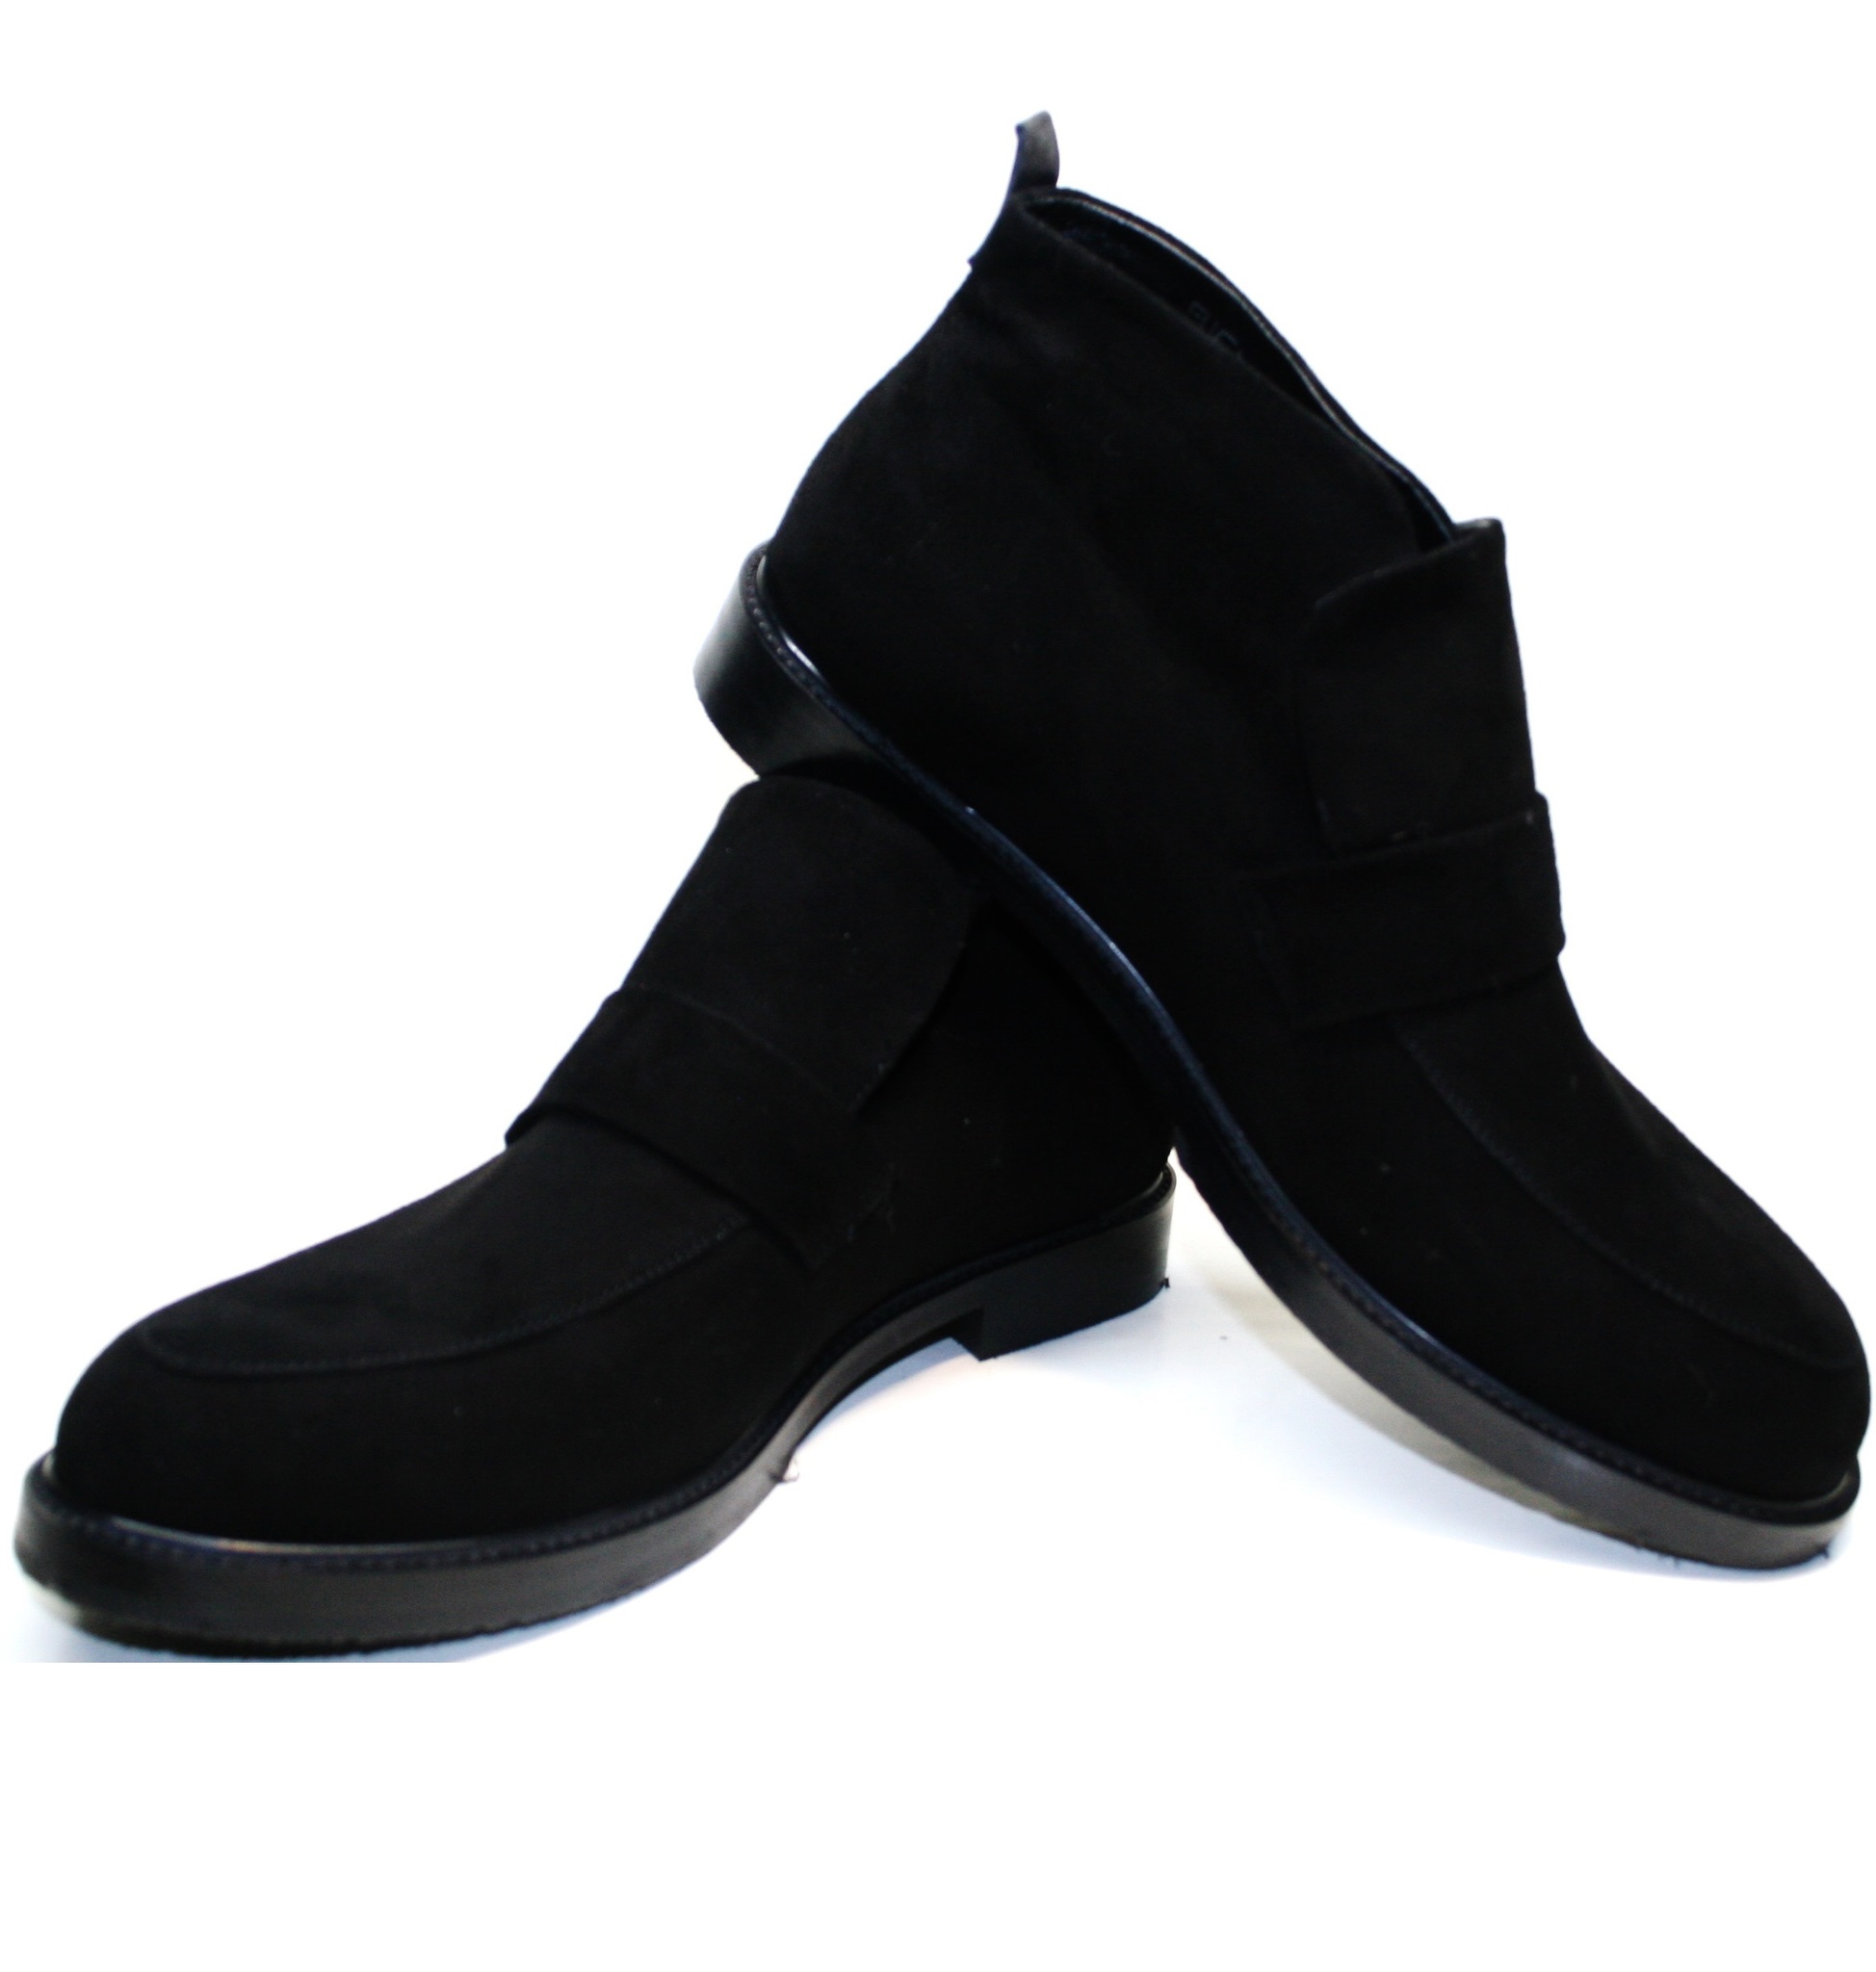 Стильные ботинки мужские - зимние лоферы Richesse.